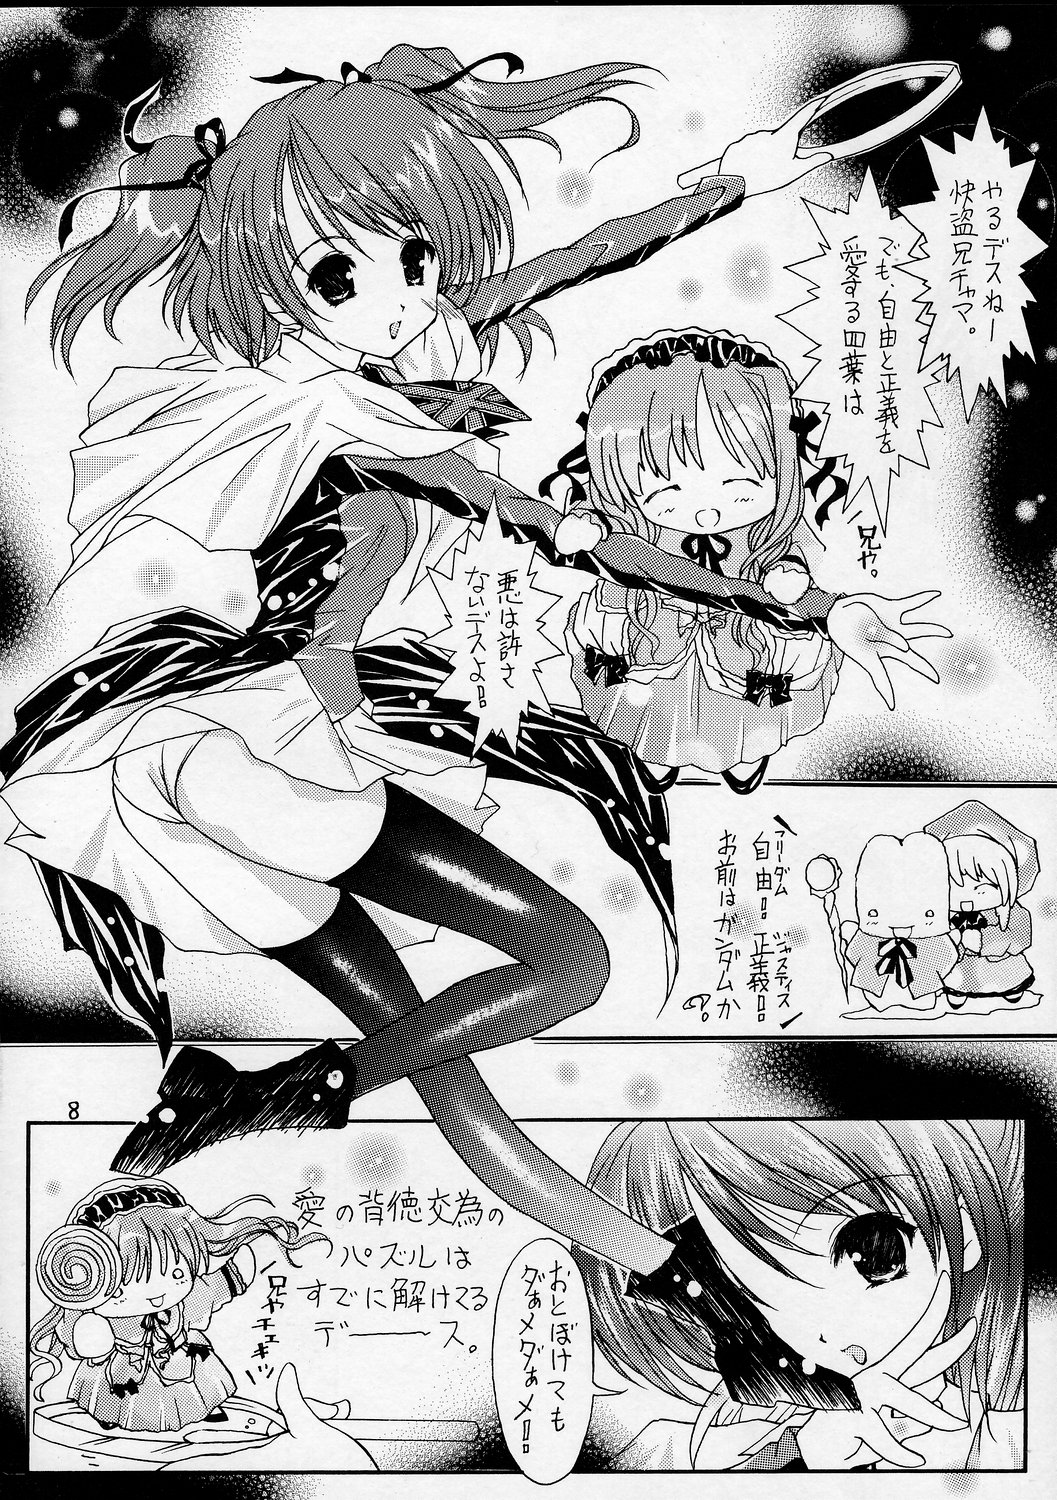 [Altyna (葵流奈)] Ikazuchi=電撃妹姫=Sister Princess (シスタープリンセス)